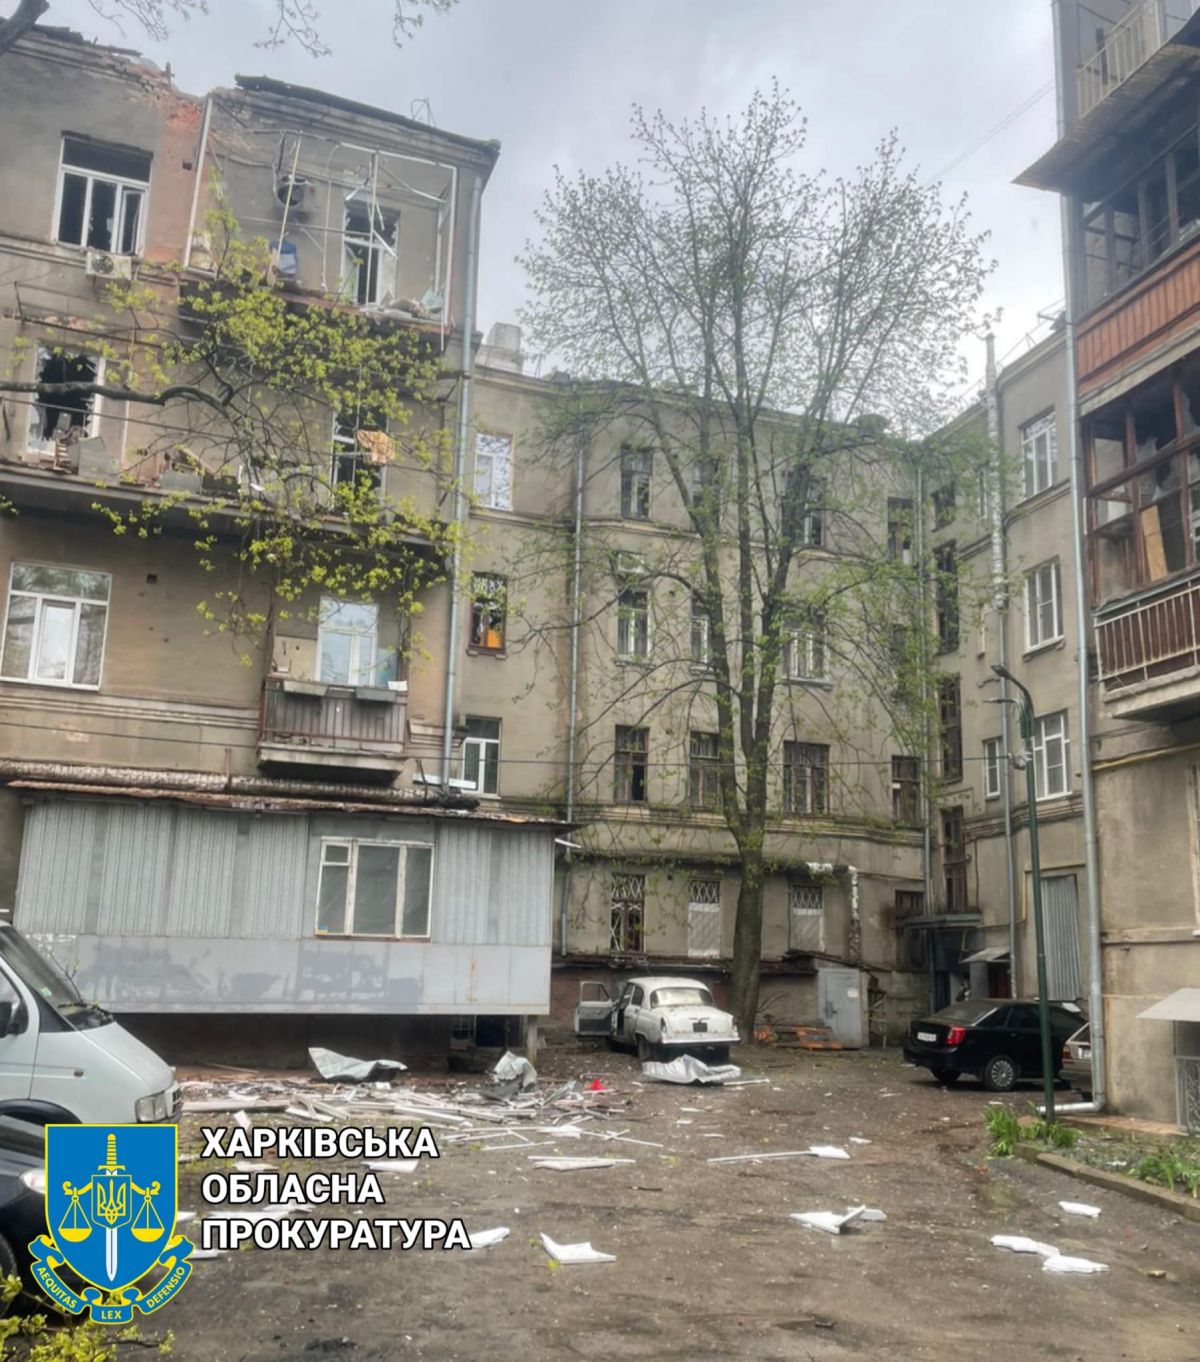 В результате обстрела центра Харькова погибли 5 человек - фото